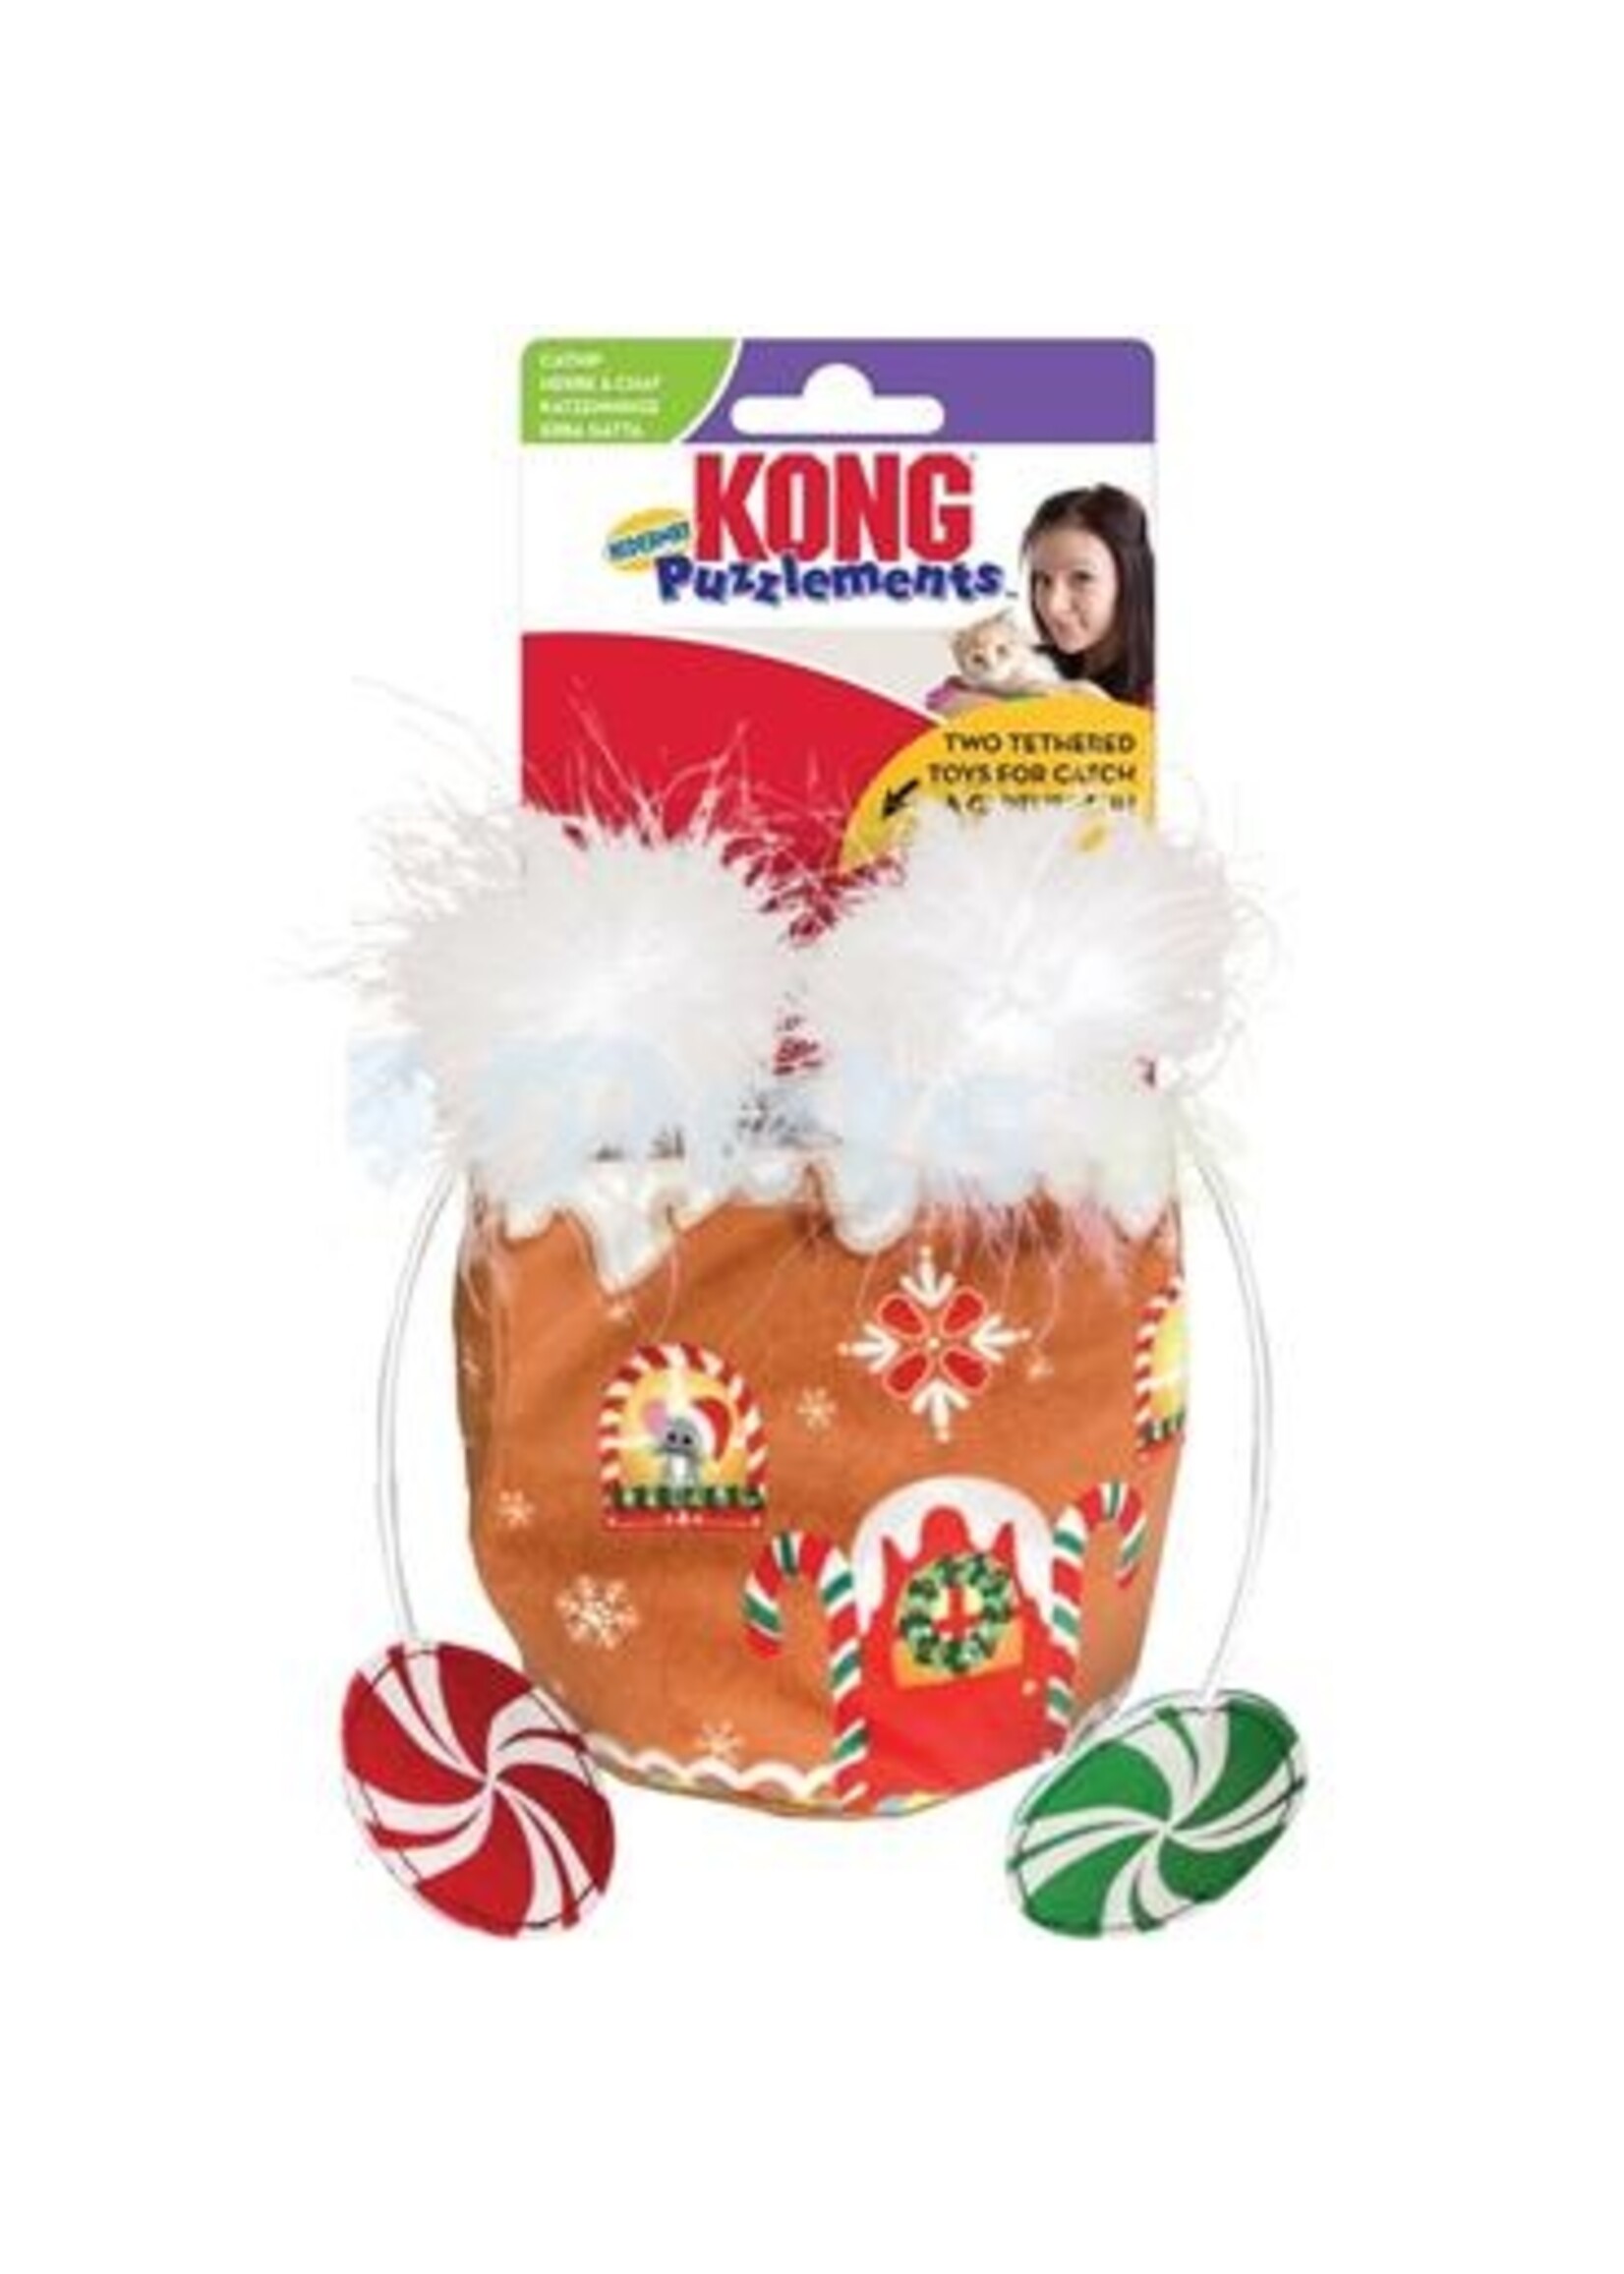 Kong Kong Holiday Puzzlements Hideaway Gingerbread